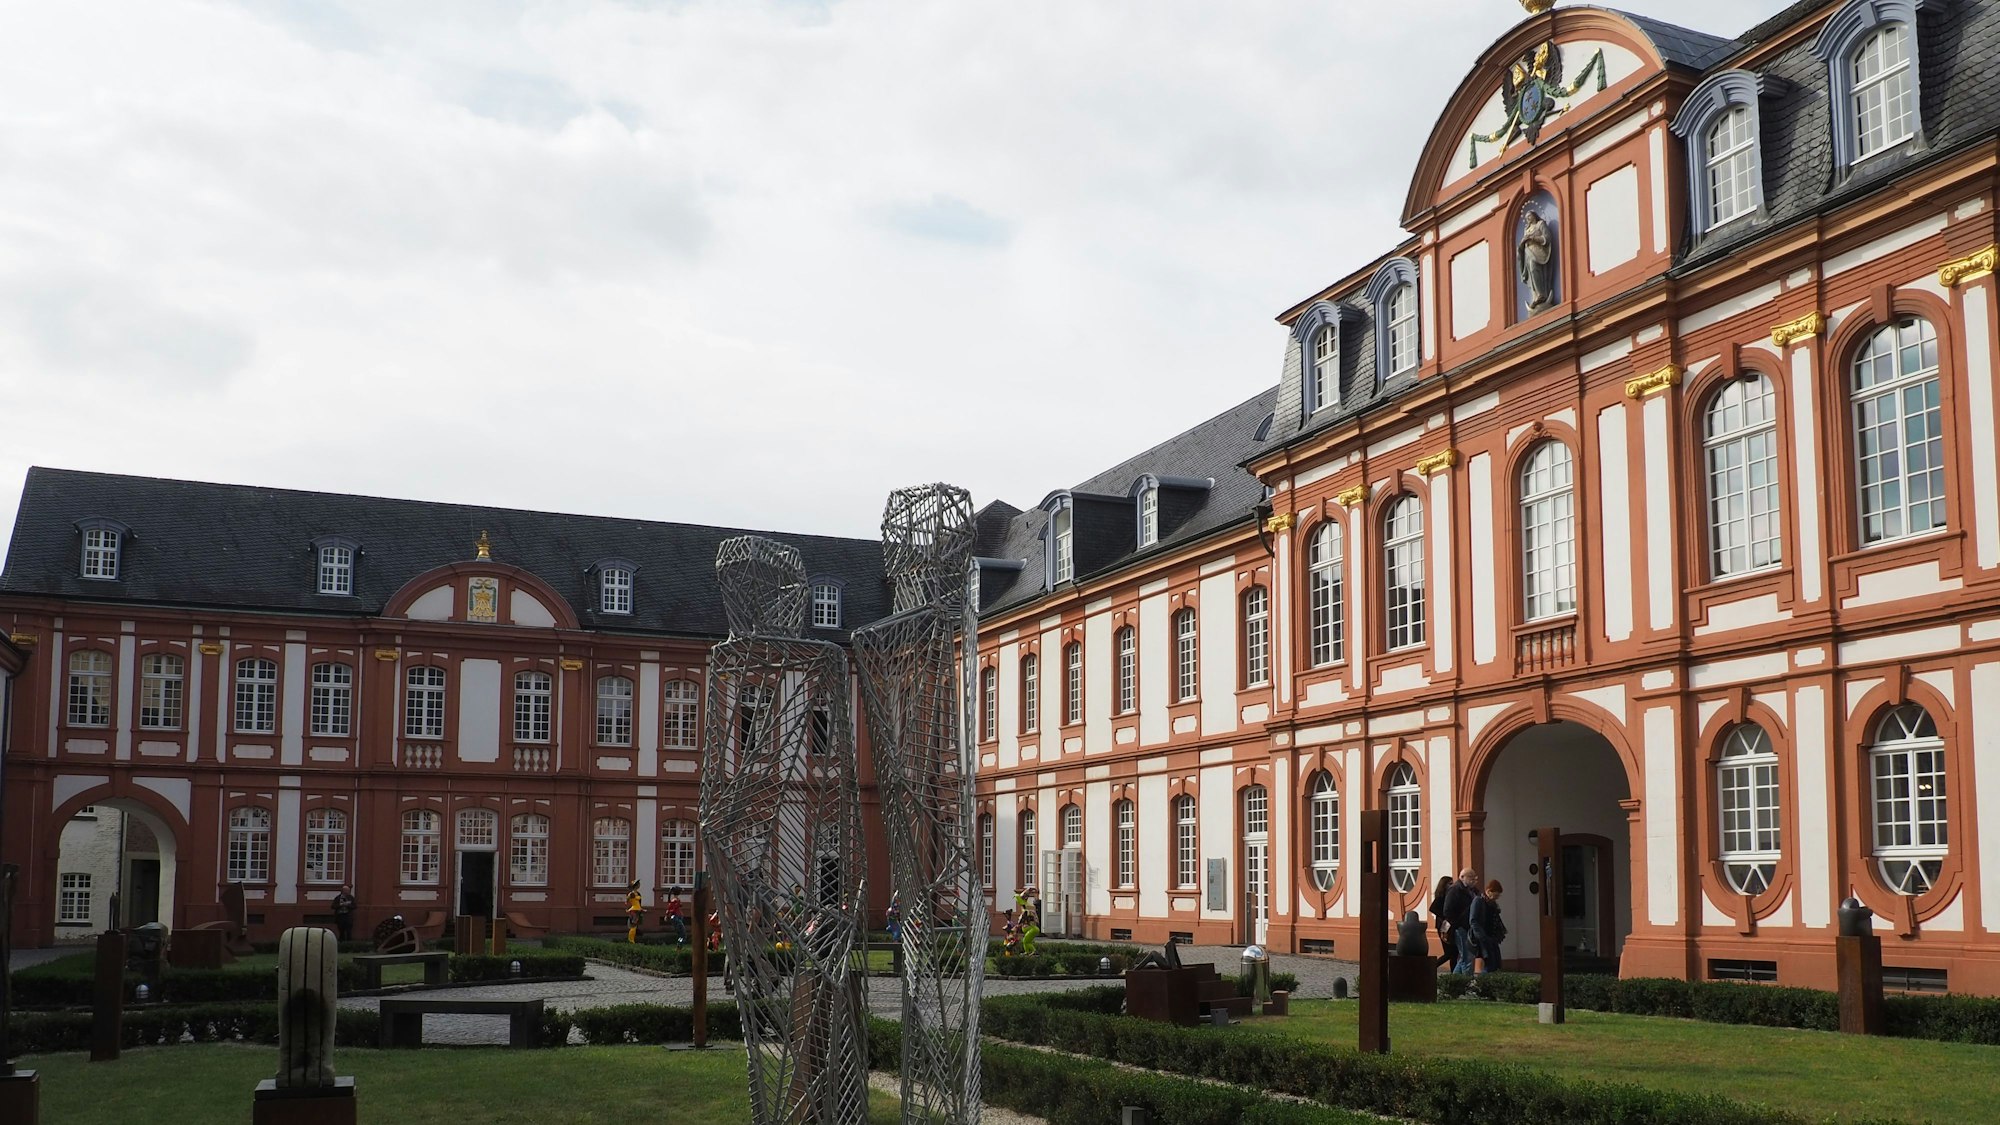 Zu sehen ist die Abtei Brauweiler mit ihrer weißen und terracotta-farbenen Fassade und einem Teil des Innenhofs.